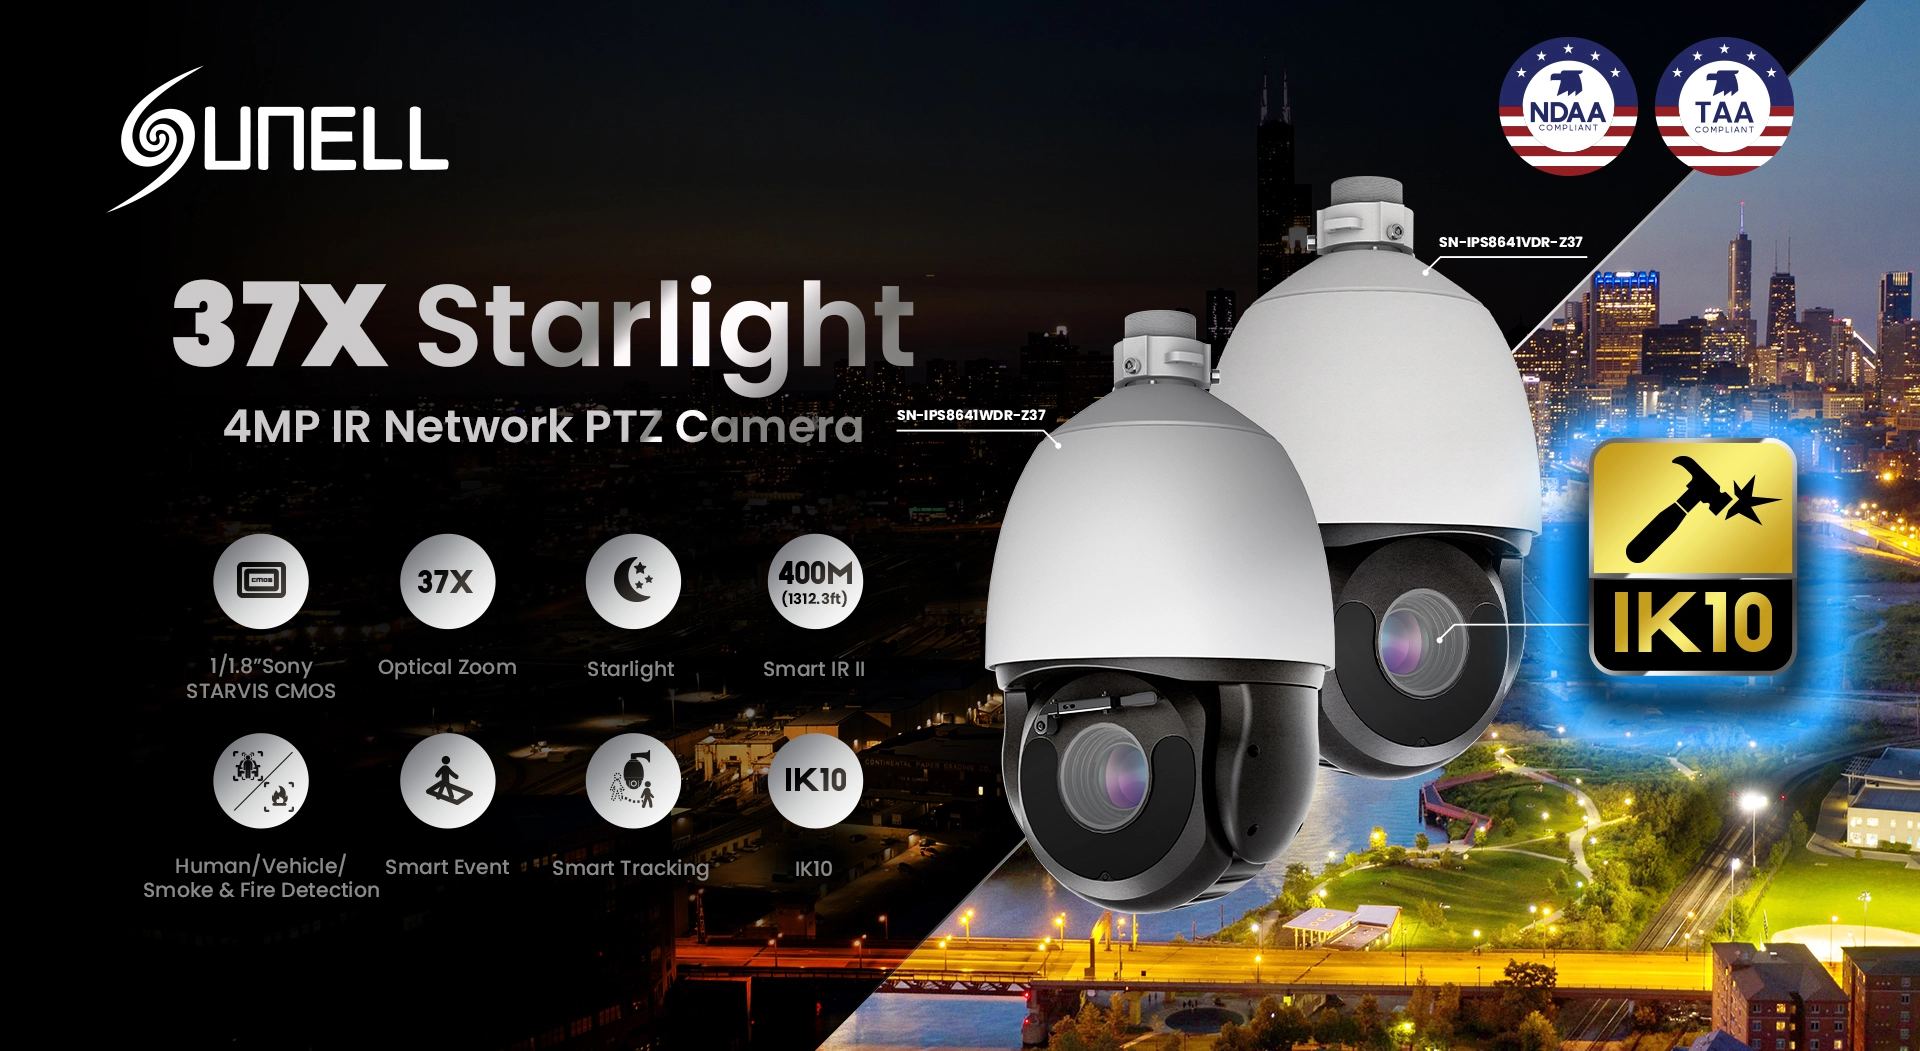 Lernen Sie Sunell die neueste 4MP Starlight PTZ Dome-Kamera kennen